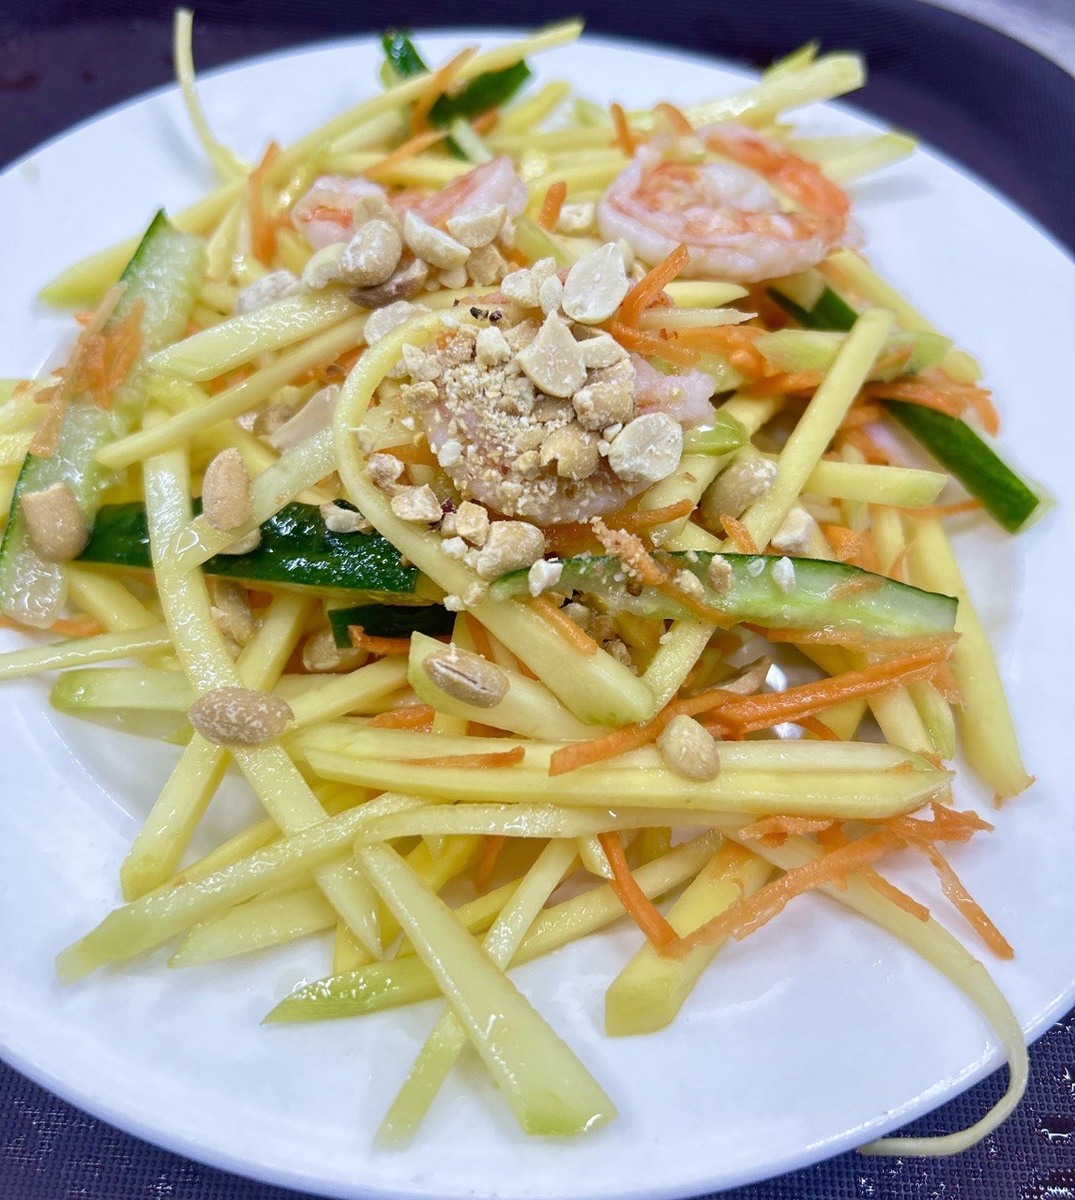 Традиционная рубрика азиатских рецептов сегодня представлена легким, летним салатом вьетнамской кухни «Соай Том».